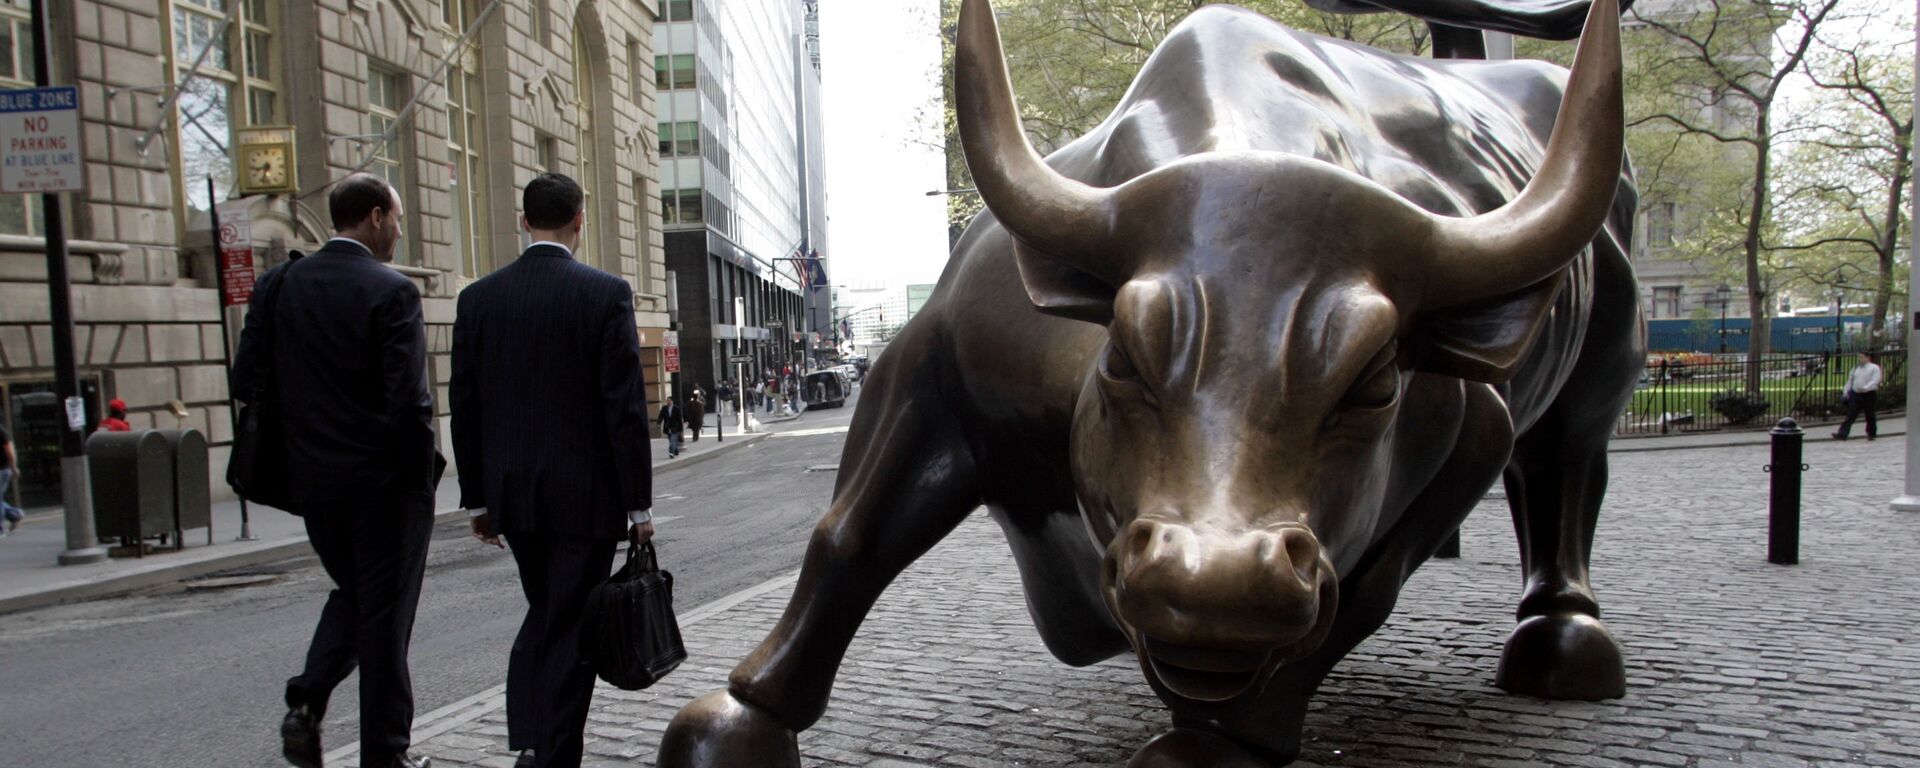 La estatua del Toro de Wall Street en Nueva York, EEUU (imagen referencial) - Sputnik Mundo, 1920, 31.01.2021